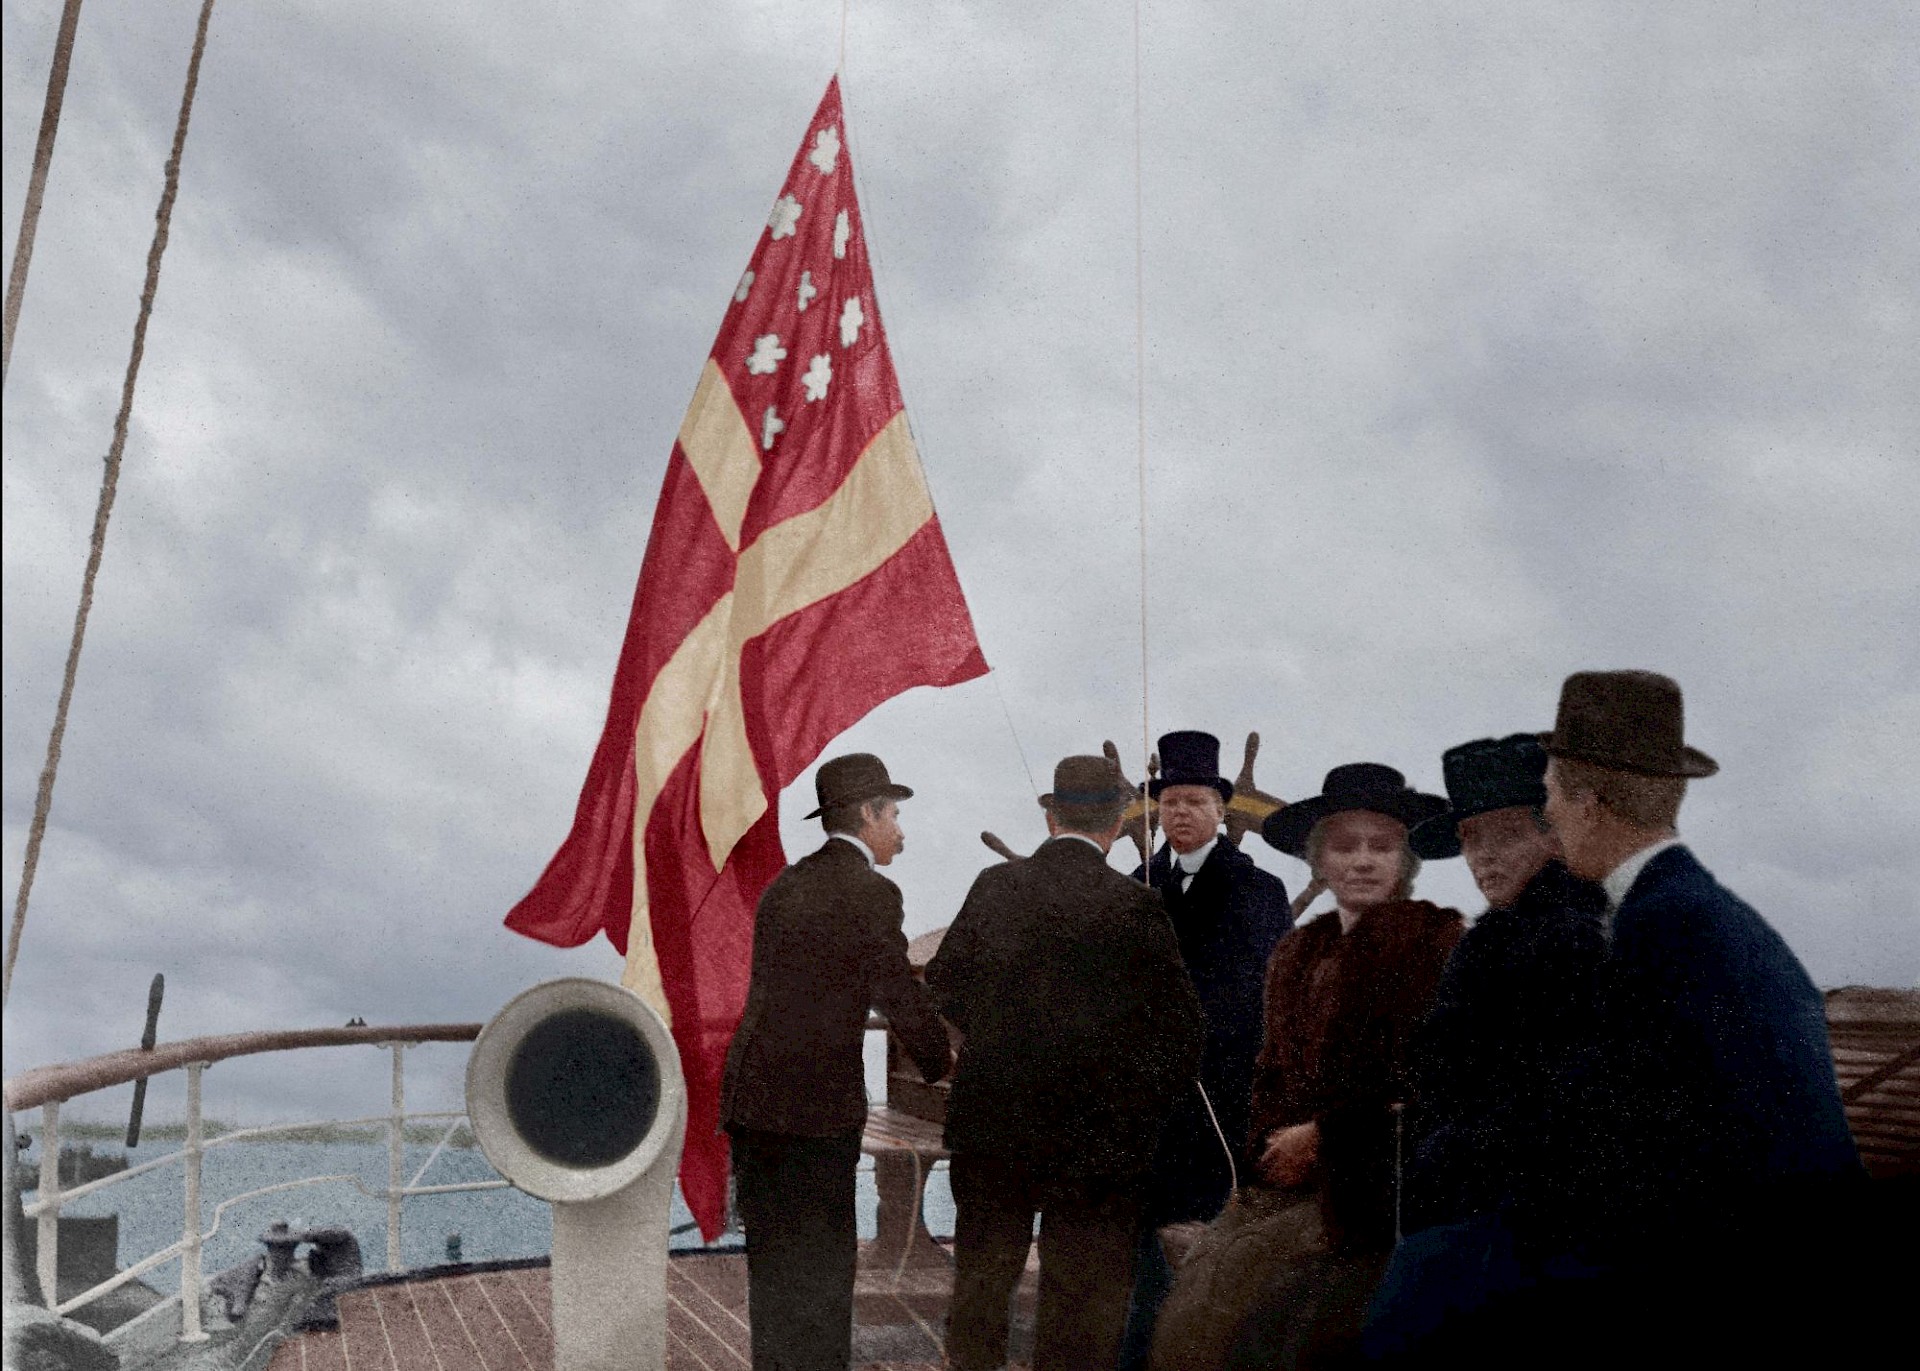 Helmikuussa 1918 merikapteeni Viktor Albert Henriksson oli Sylfid-laivansa kanssa Bordeaux’ssa. Laivalla järjestettiin juhlatilaisuus, jossa kahveliin nostettiin ensimmäisen kerran Suomen lippu. Tuolloin laivalla käytettiin lippukomitean joulukuussa 1917 esittämää kauppalippua, sillä eduskunta ei ollut vielä tehnyt lopullista päätöstä merenkulku- ja kauppalipusta. Kalle ja Jussi Aarnion kokoelma, väritys Tommi Rossi.